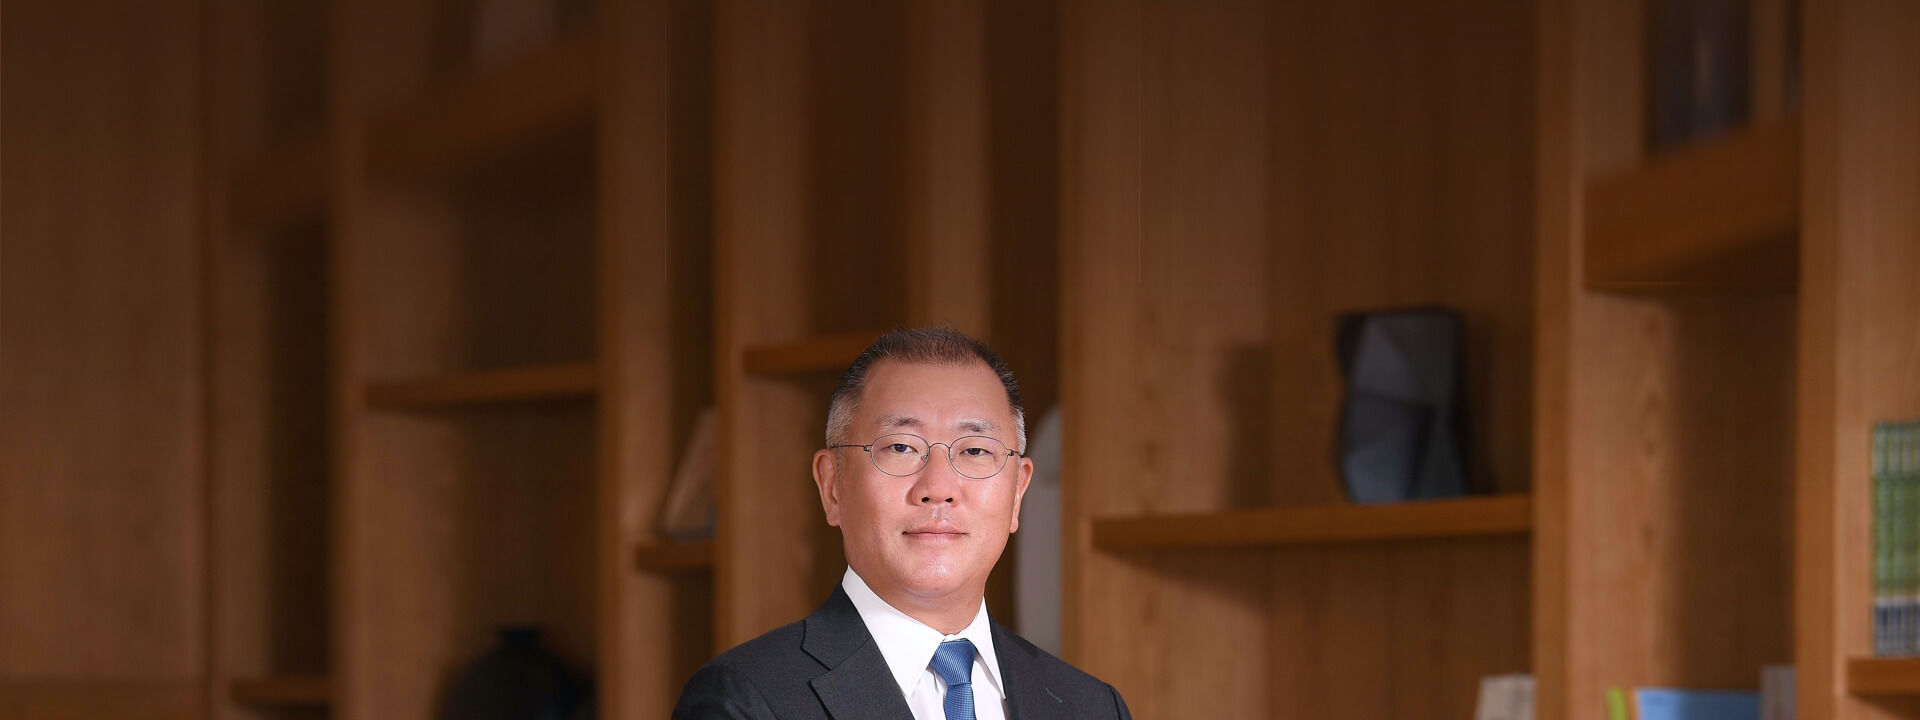 Hyundai_Euisun-Chung-Chairman_HMG_header_1920x720.jpg